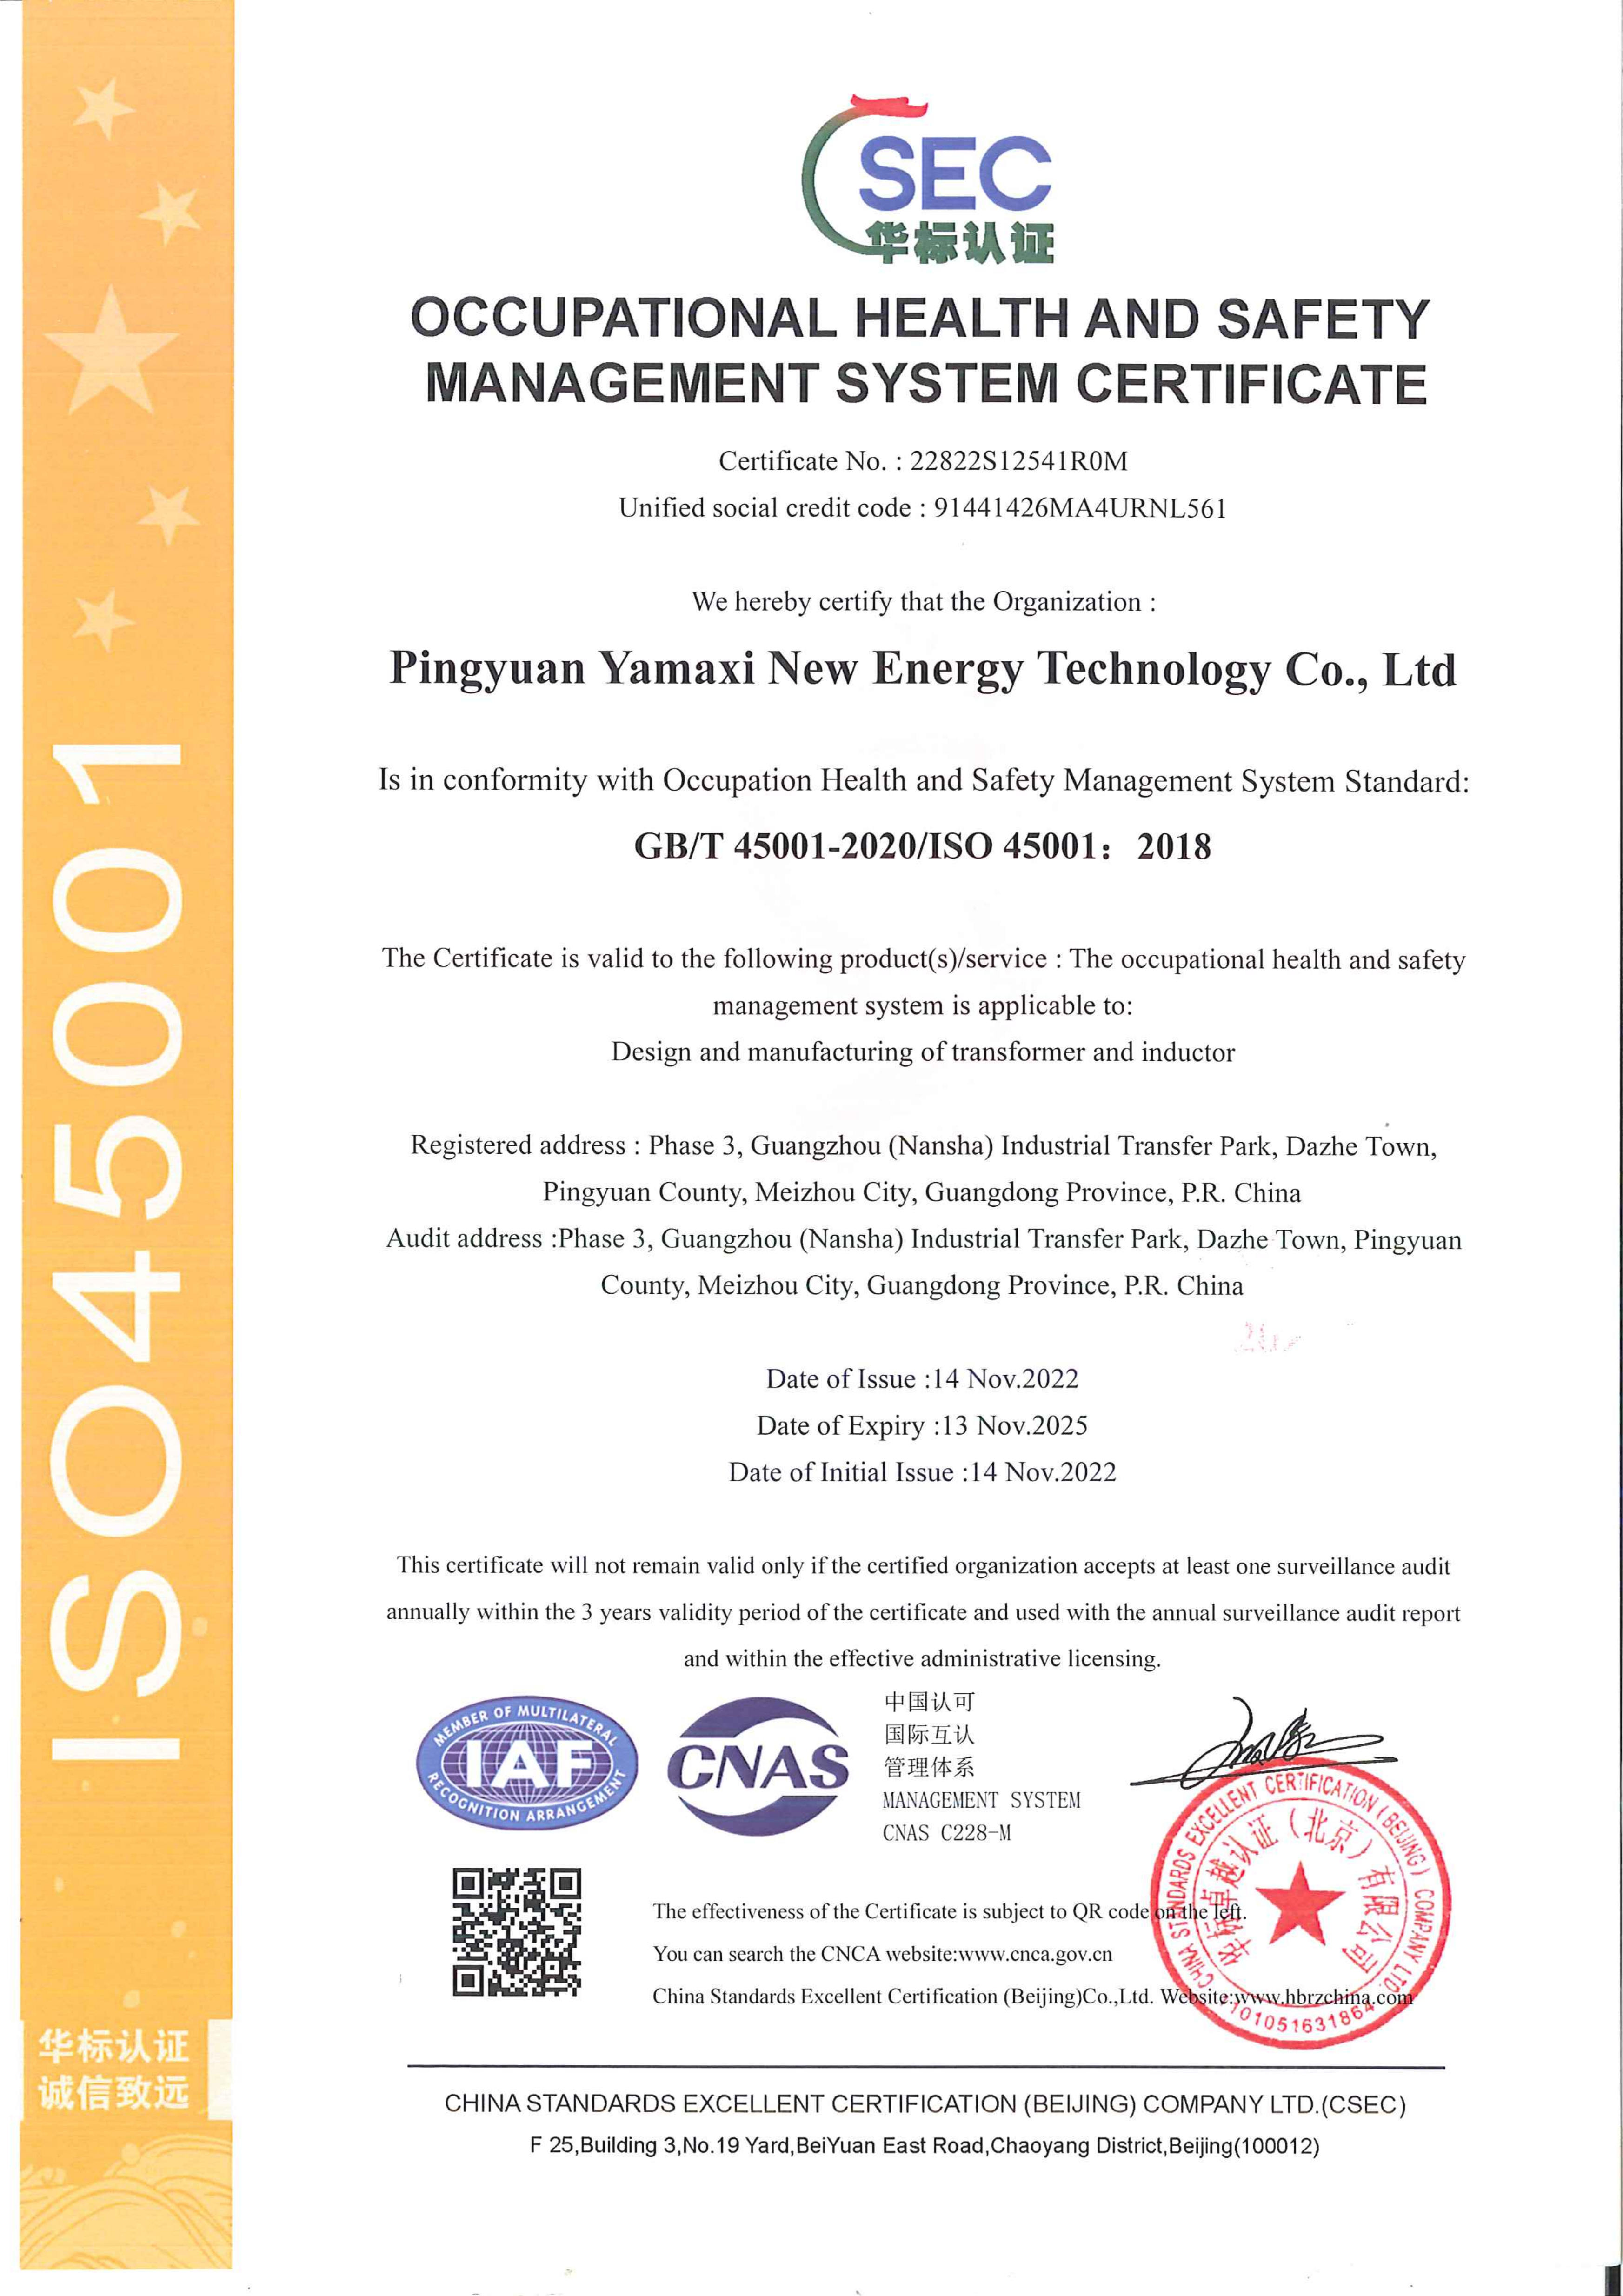 4.1 新能源-ISO45001证书--英文 2022.12.05_00